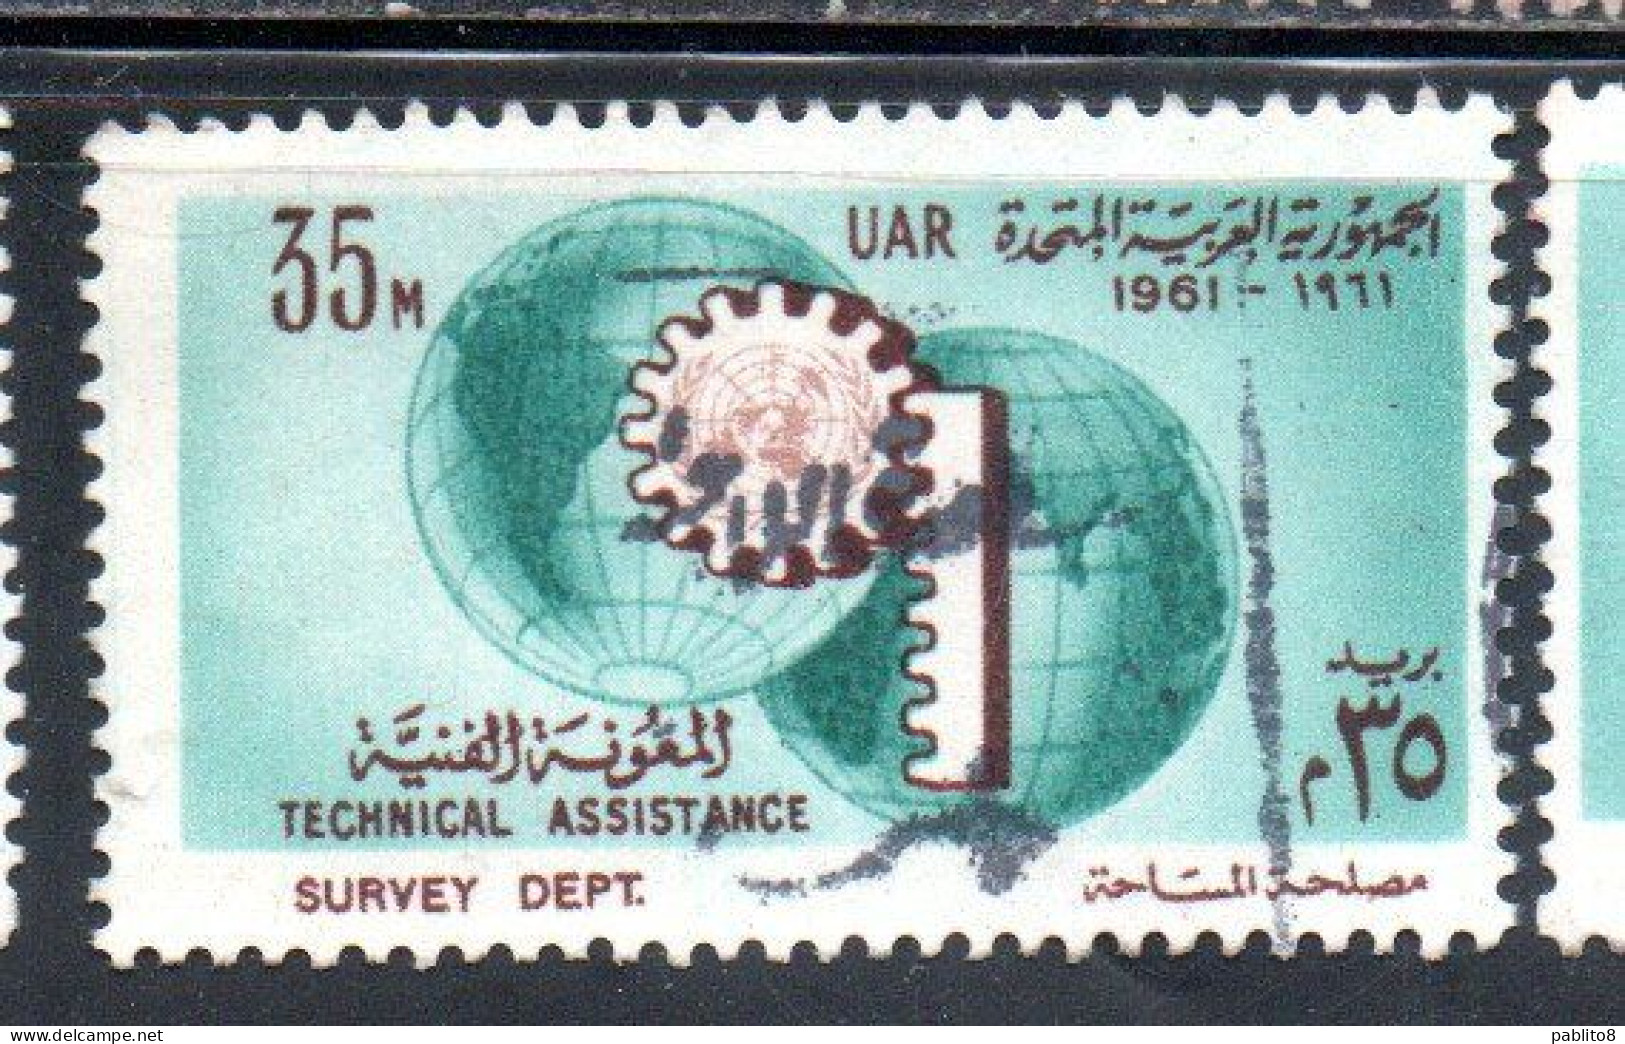 UAR EGYPT EGITTO 1961 UN ONU TECHNICAL ASSISTENCE PROGRAM AND 16th ANNIVERSARY 35m USED USATO OBLITERE' - Usati